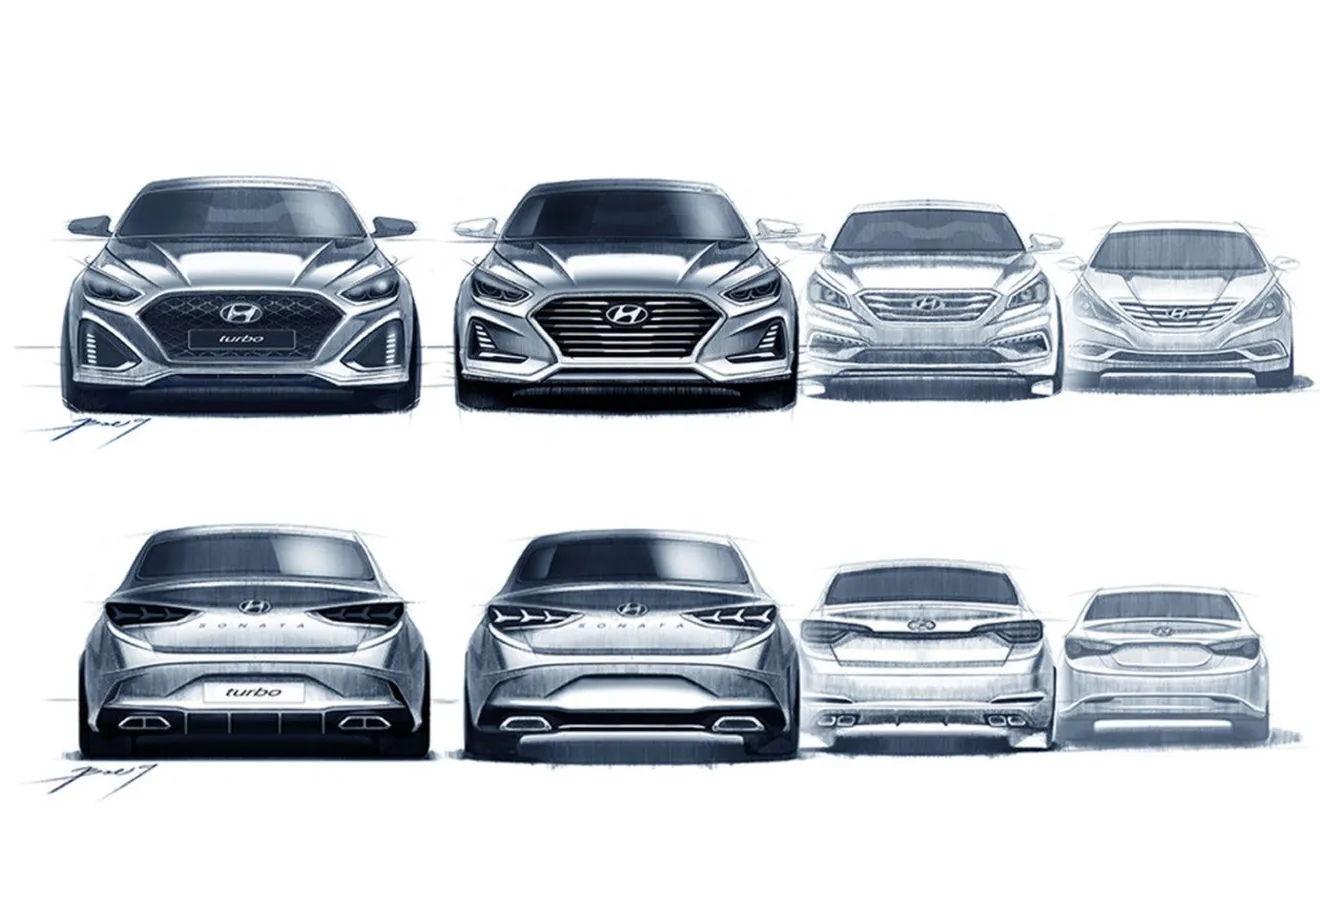 Hyundai destapa el Sonata 2018 con unos bocetos, confirmada la versión deportiva